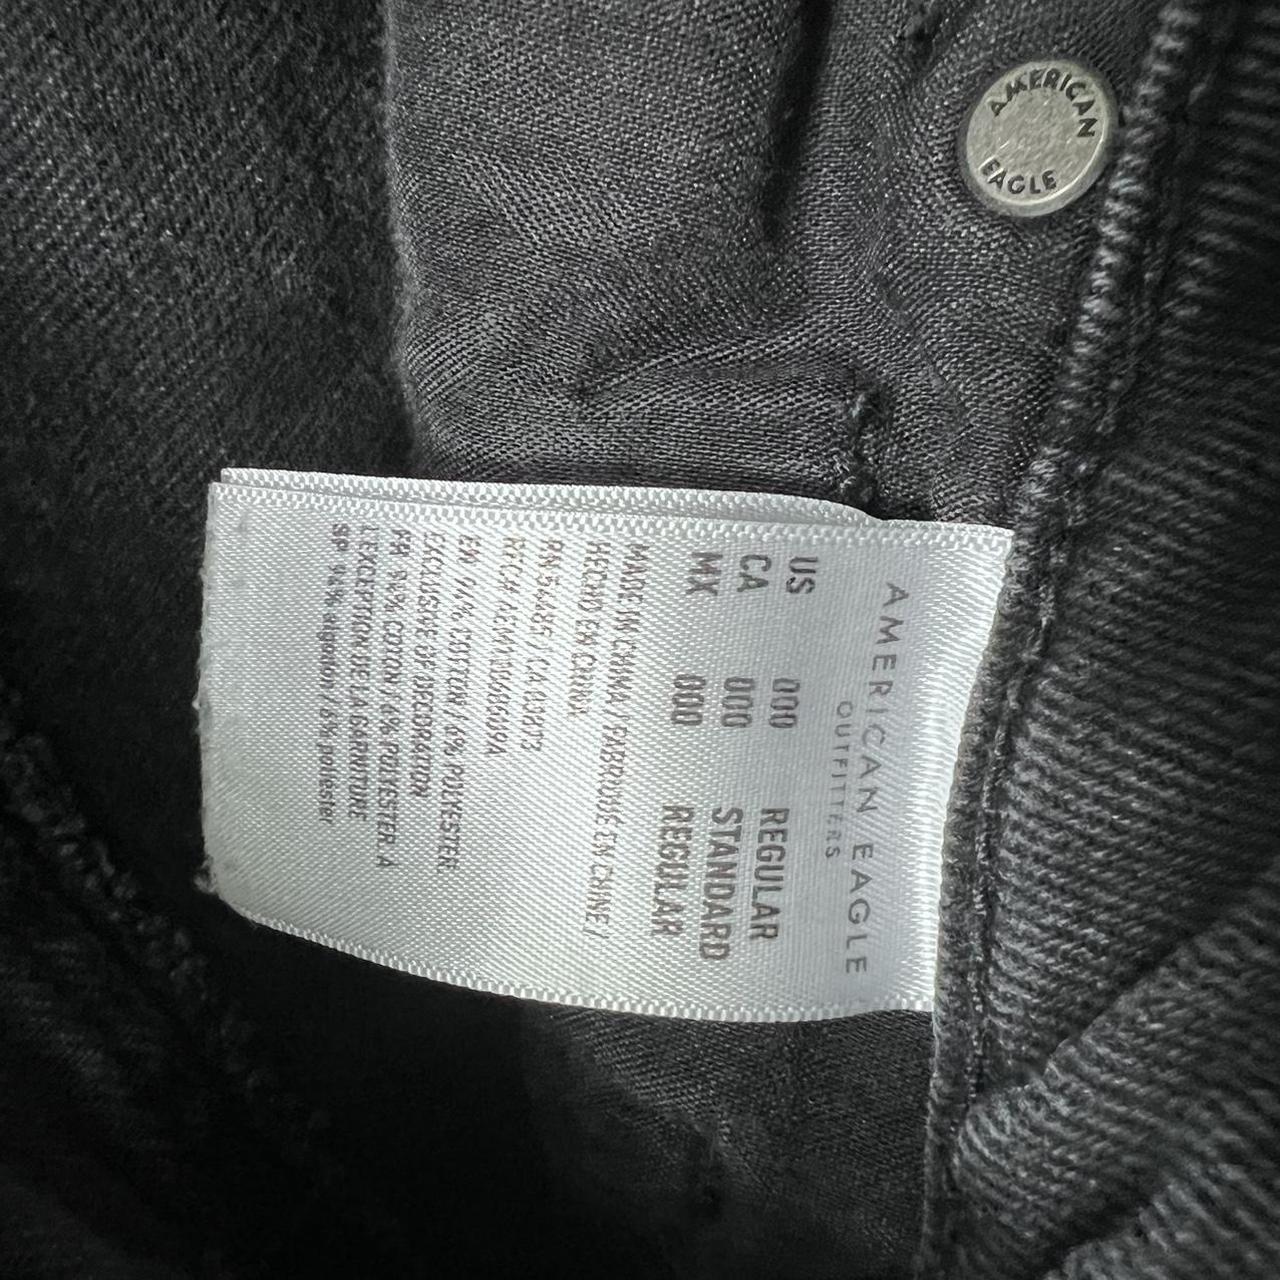 American eagle black washed jeans Size 000 regular... - Depop